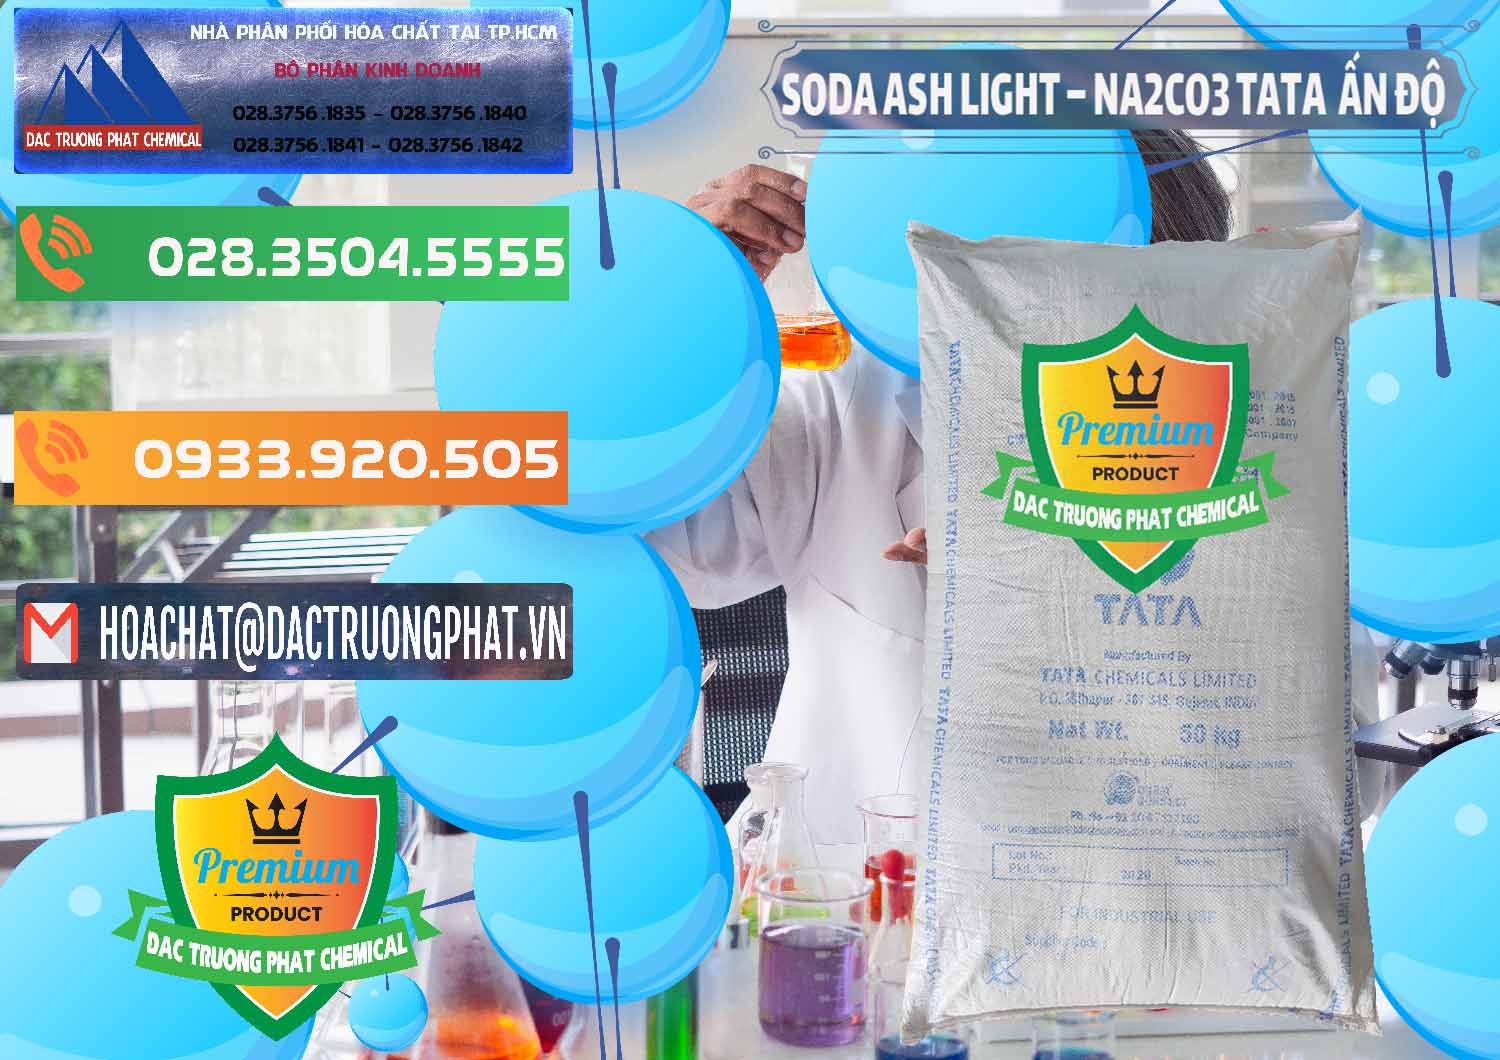 Cty chuyên bán - cung ứng Soda Ash Light - NA2CO3 TATA Ấn Độ India - 0132 - Công ty chuyên kinh doanh ( phân phối ) hóa chất tại TP.HCM - hoachatxulynuoc.com.vn